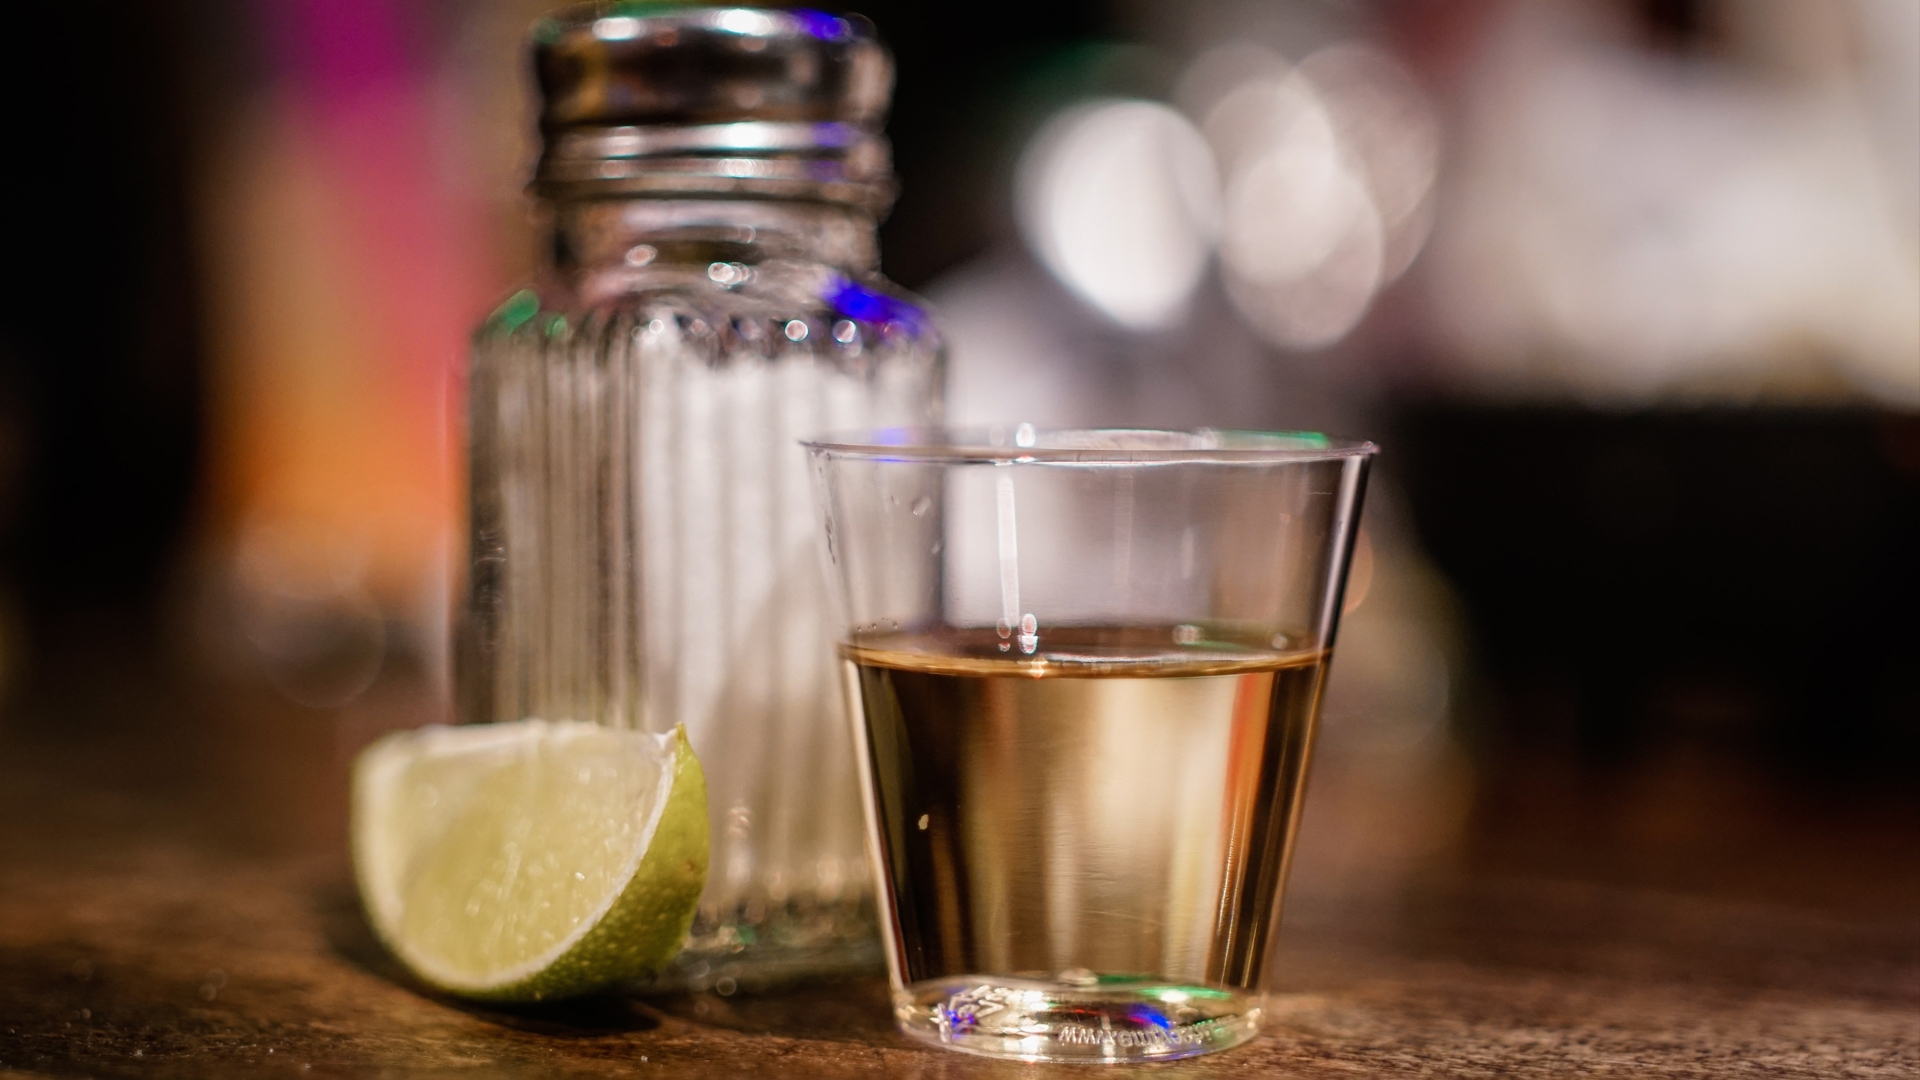 El tequila y la identidad mexicana. Foto de Francisco Galarza para Unsplash